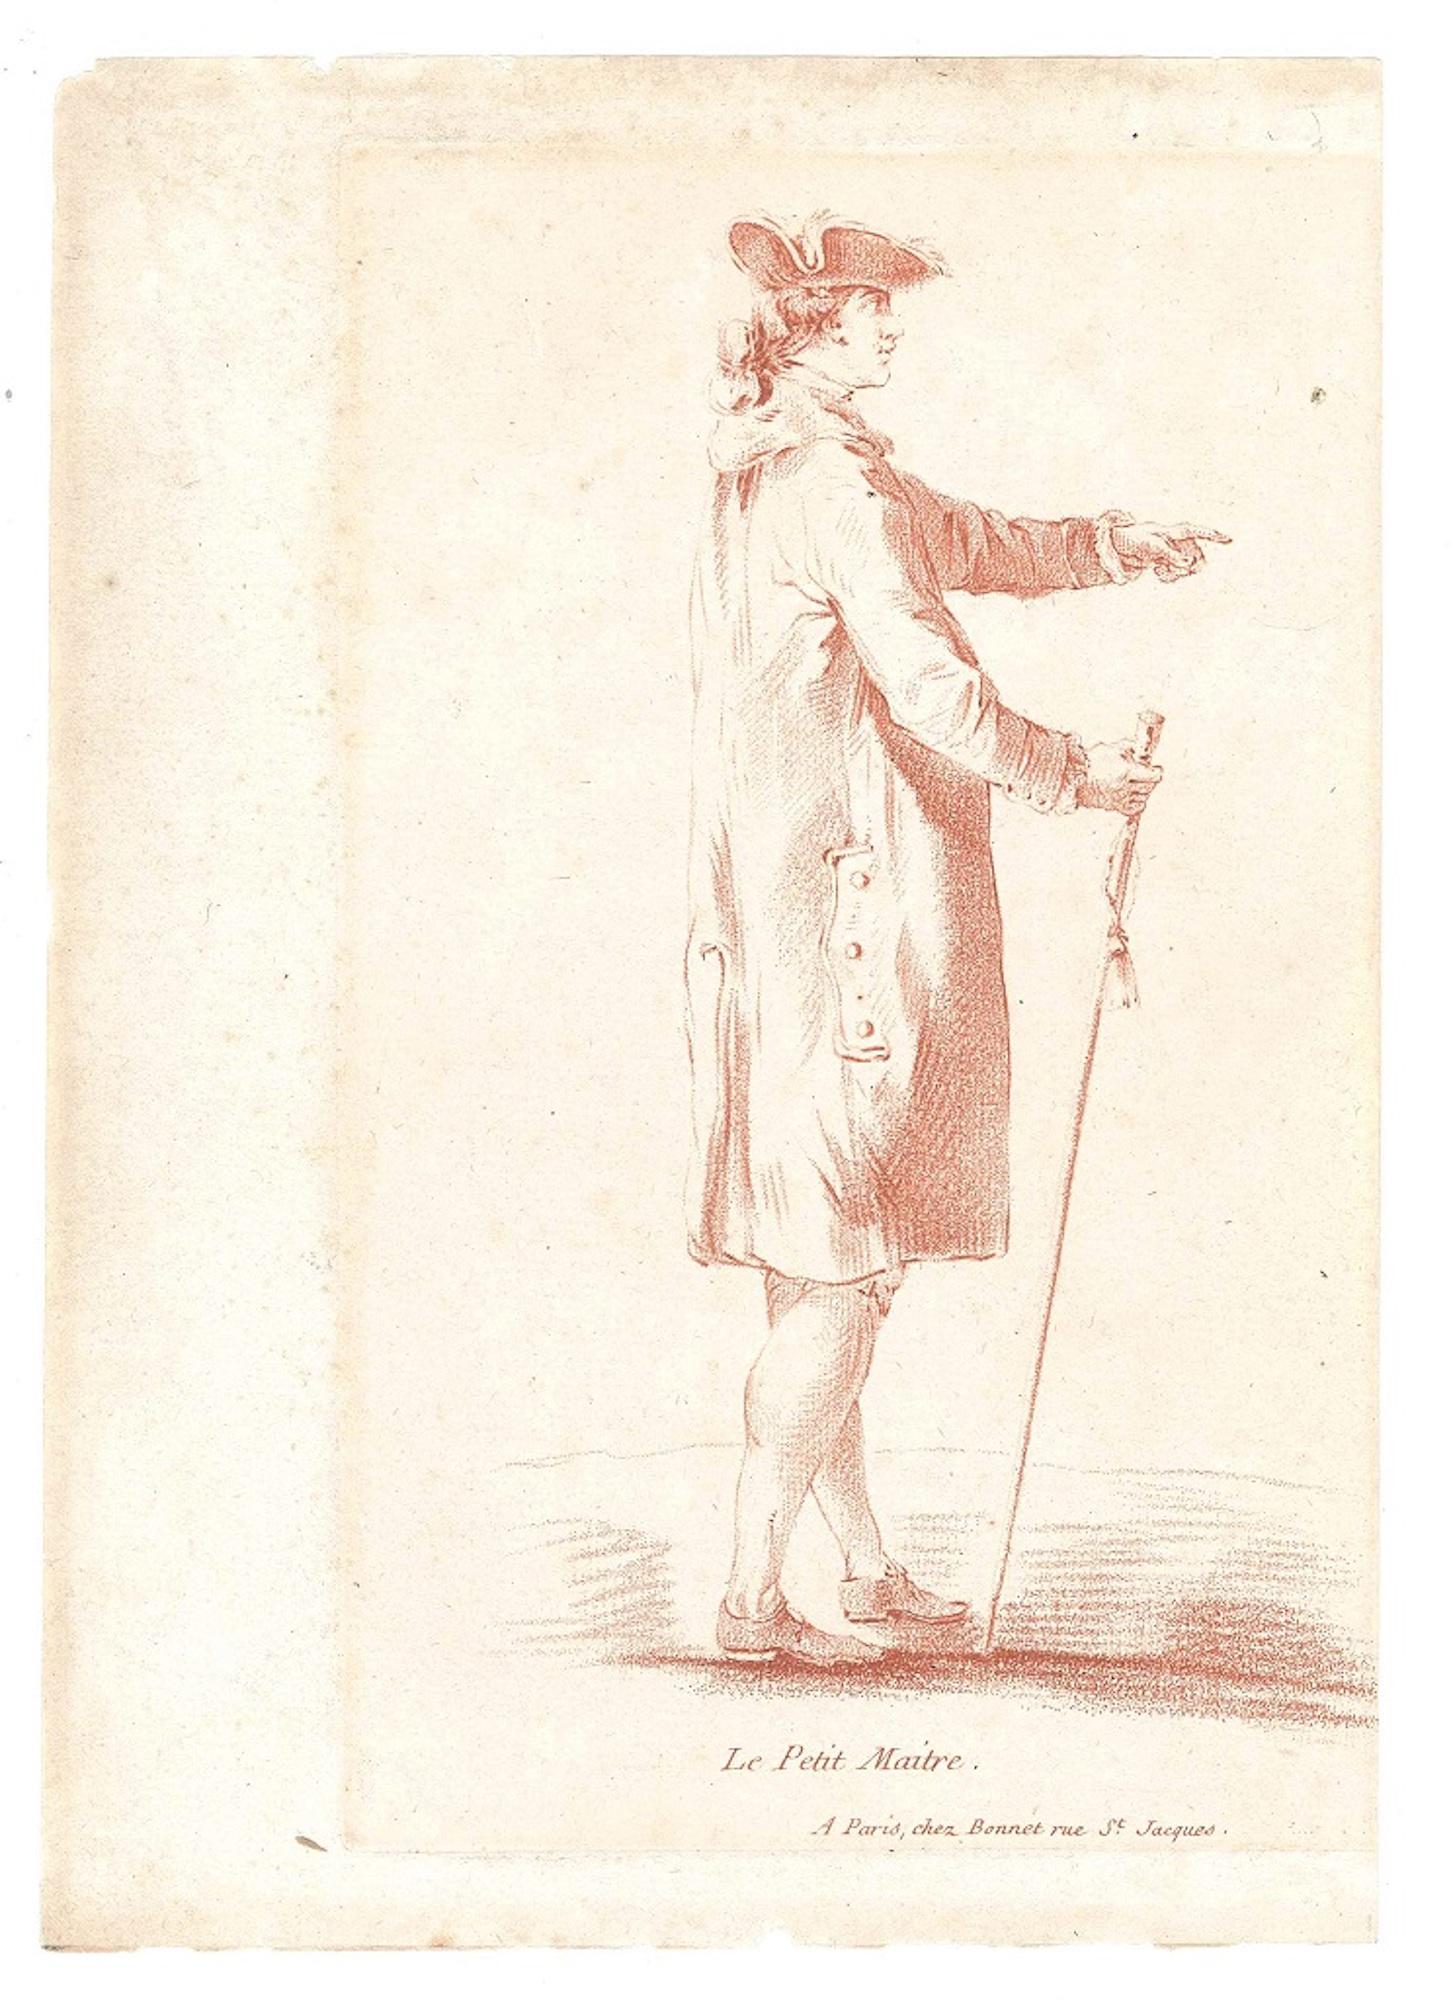 Louis-Marin Bonnet Portrait Print - Le Petit Maitre - Original Etching and Pastel by L-M Bonnet - Late 18th Century